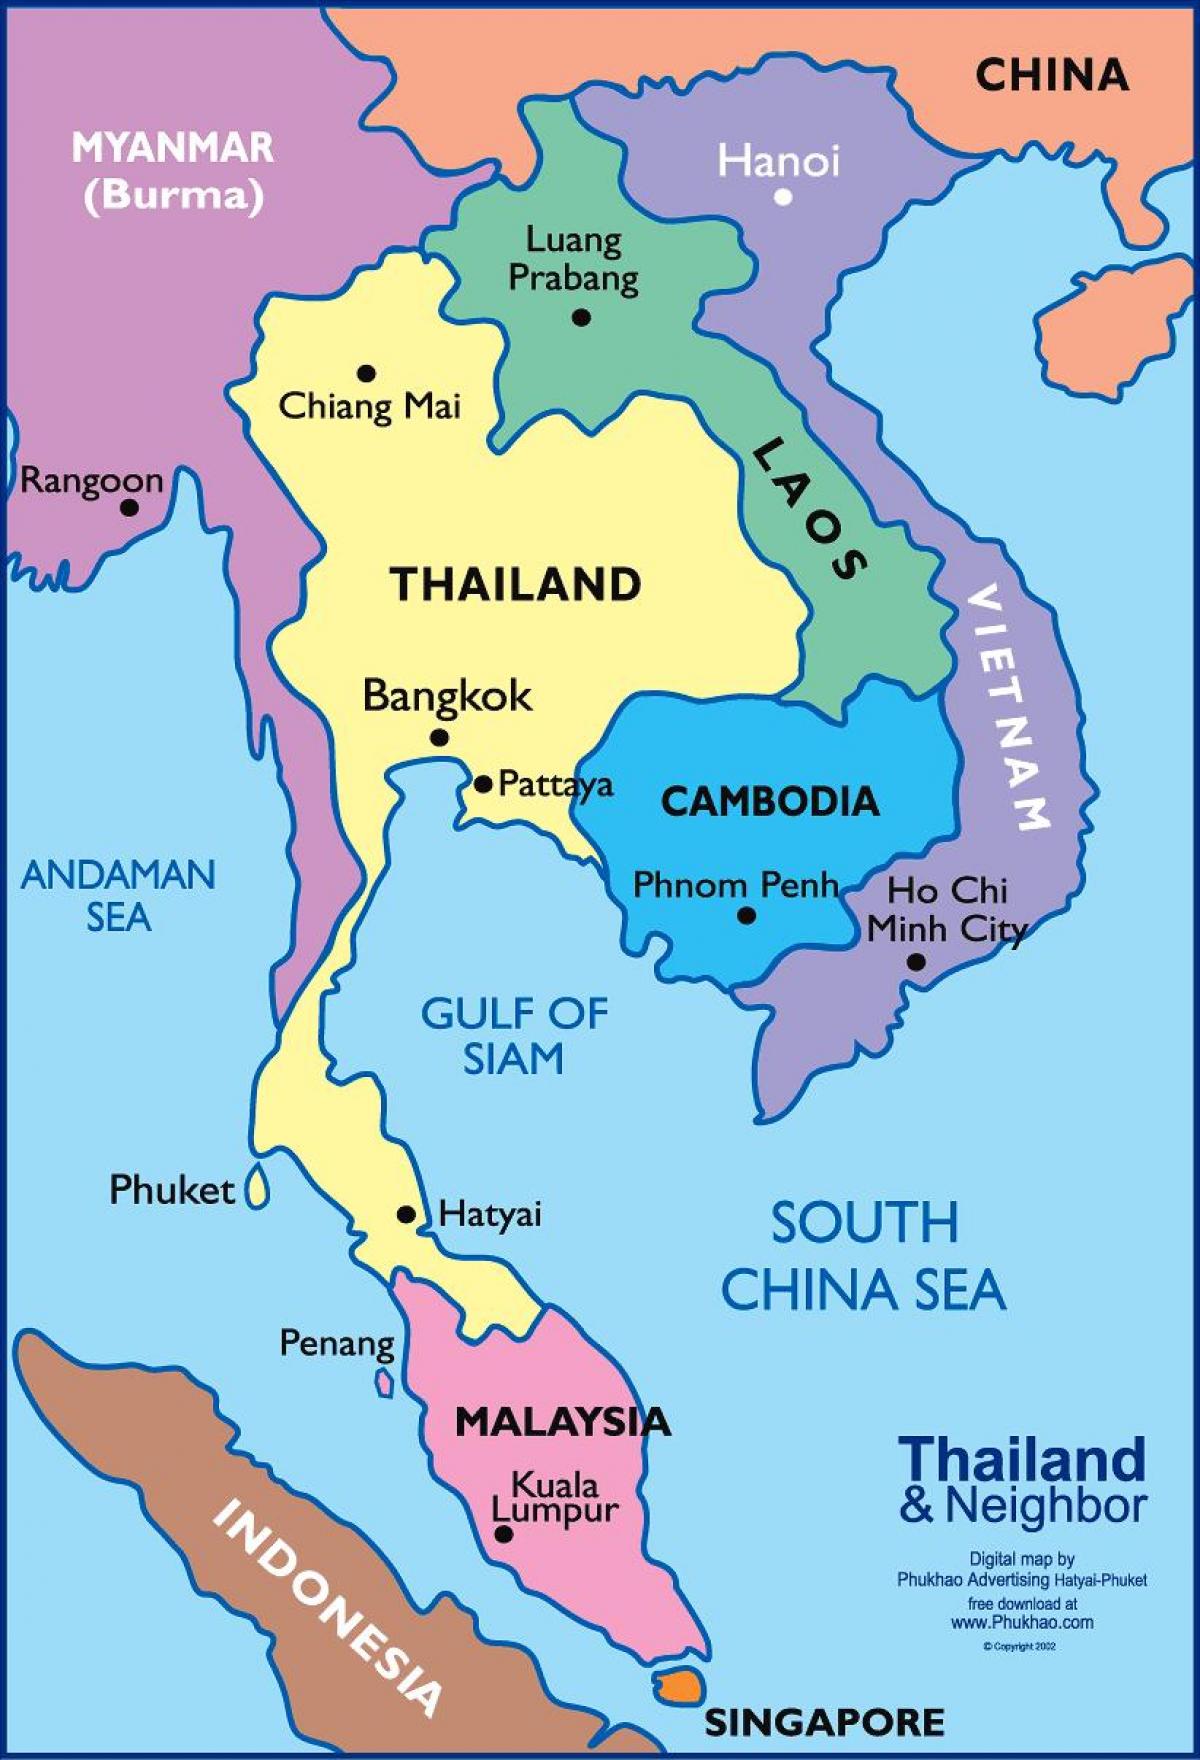 بانكوك التايلاندية خريطة